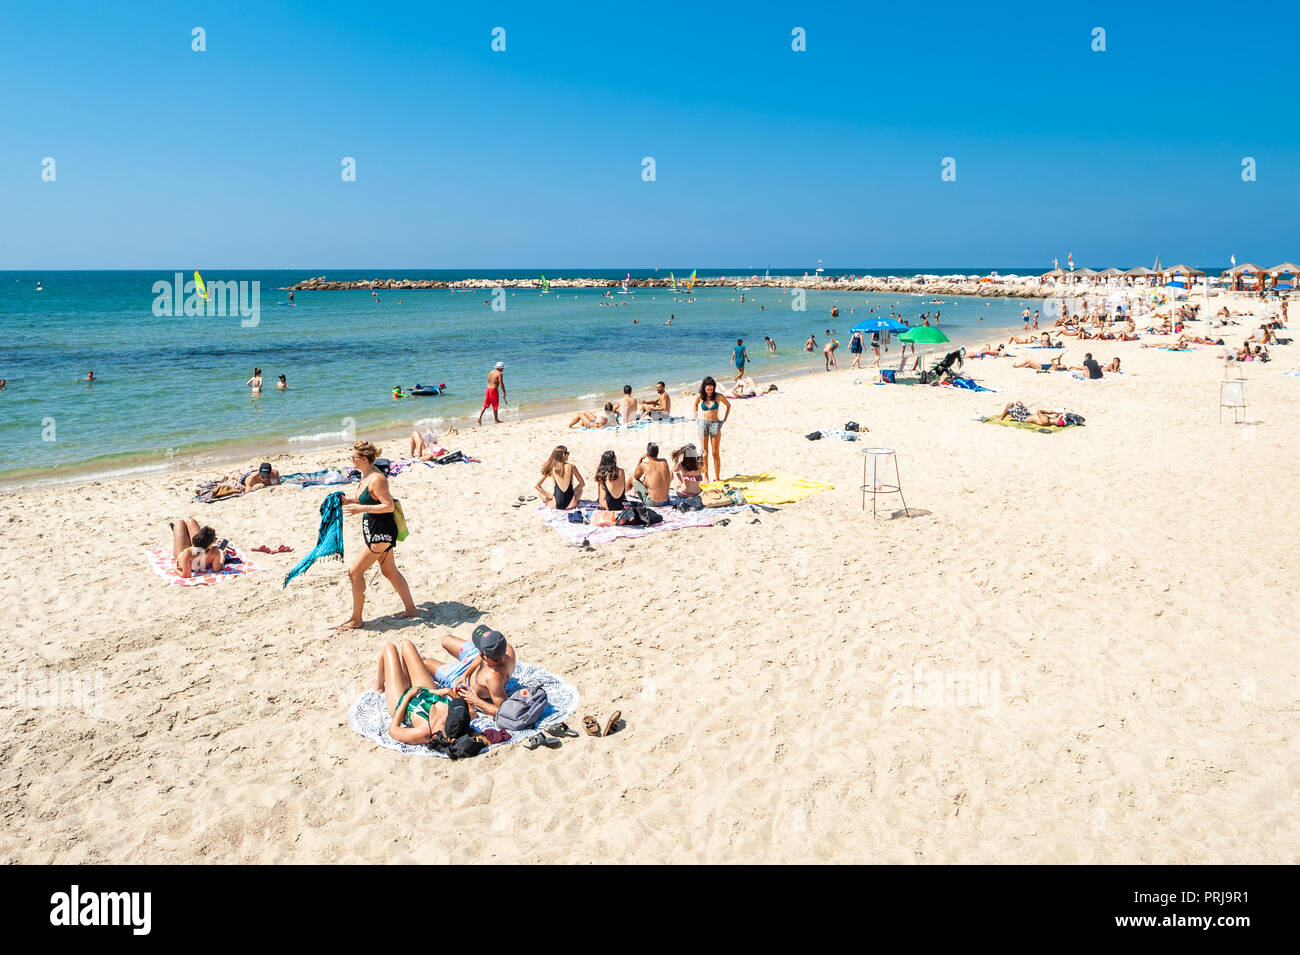 Israel, Tel Aviv - 24 de septiembre de 2018: la gente disfrutar de la playa a finales de septiembre Foto de stock